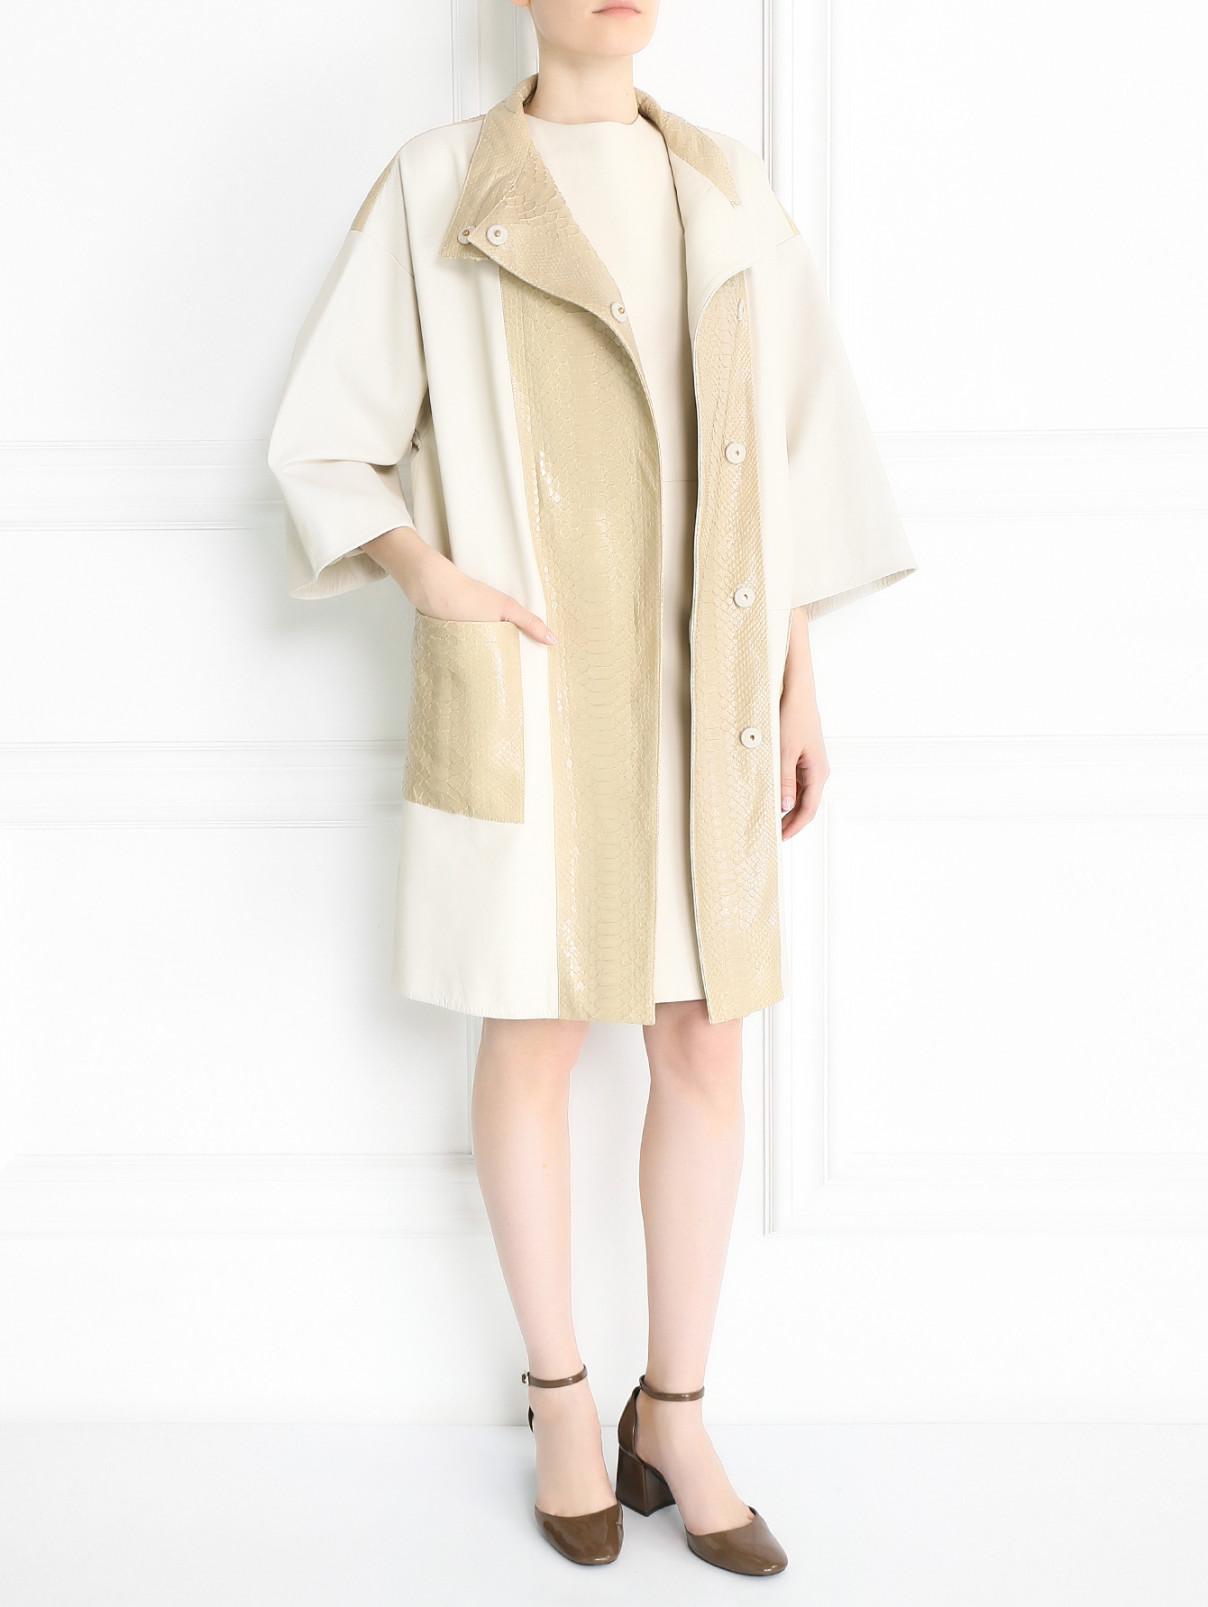 Пальто из комбинированной кожи с накладными карманами Yves Salomon  –  Модель Общий вид  – Цвет:  Бежевый